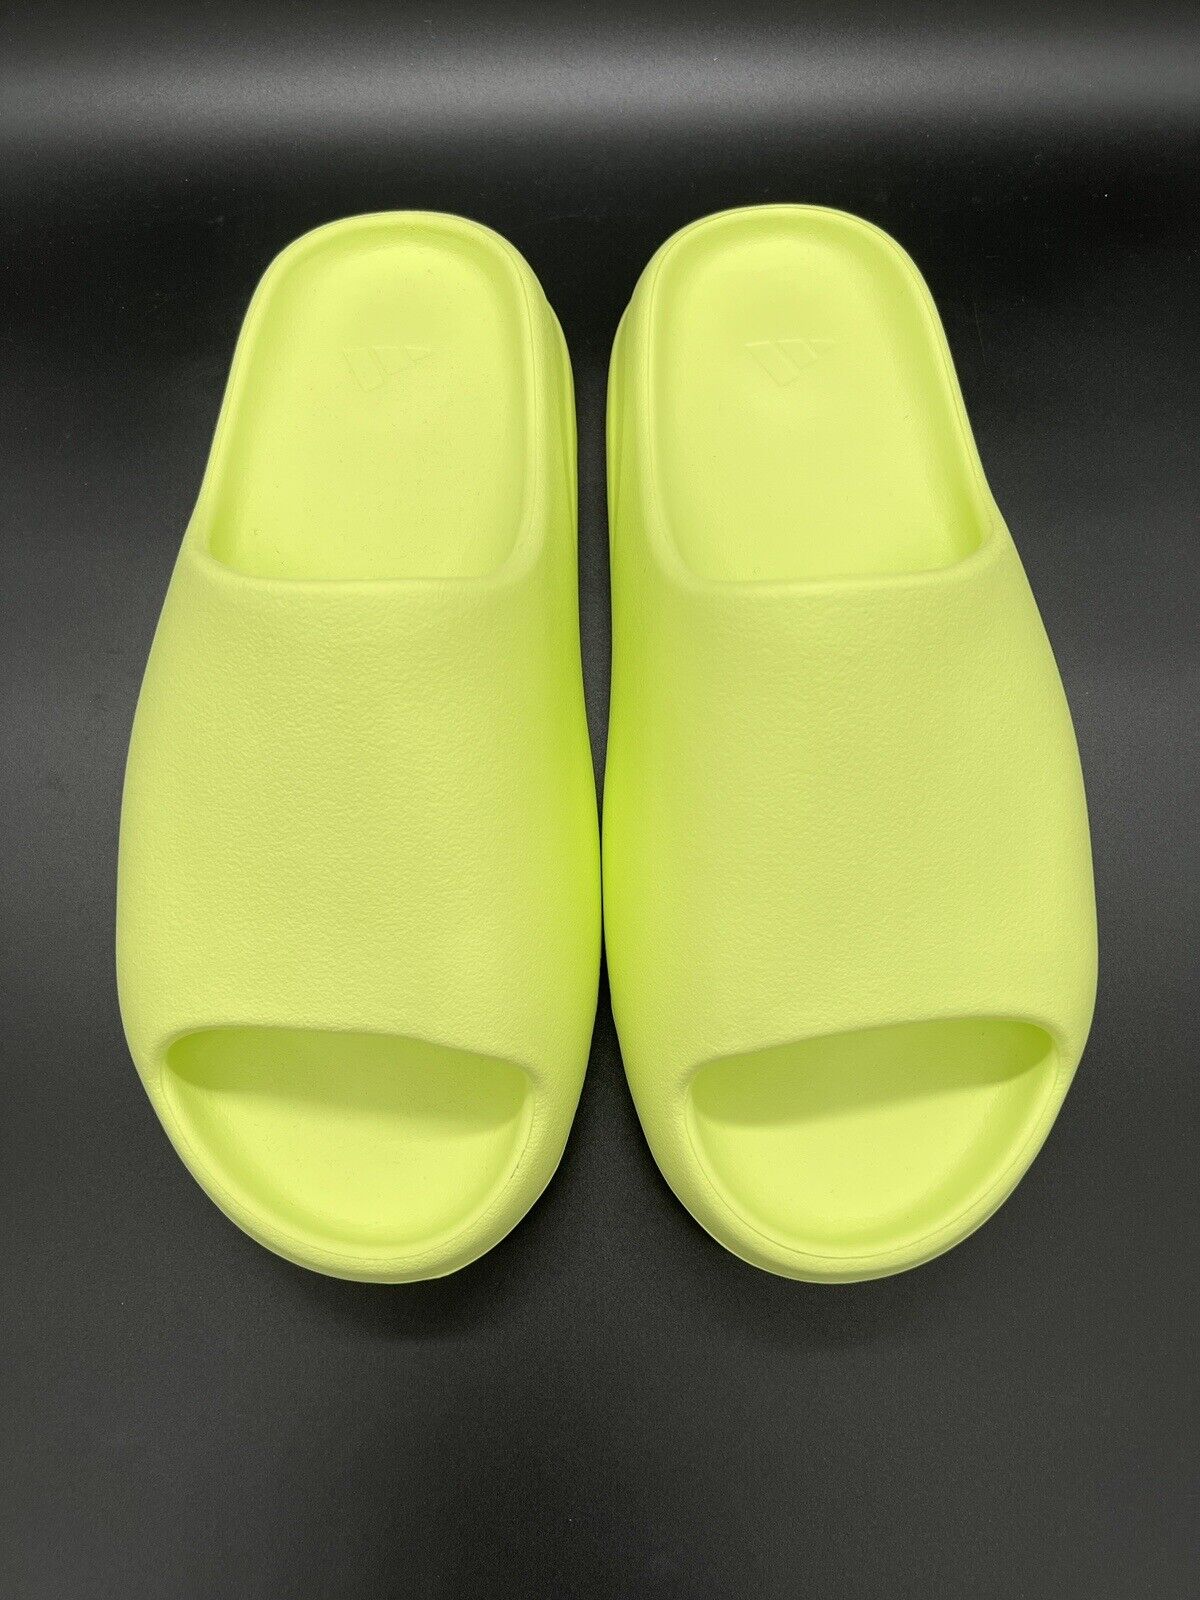 Adidas Yeezy Slide Glow Green - 47(Eu) New US 12 New | eBay